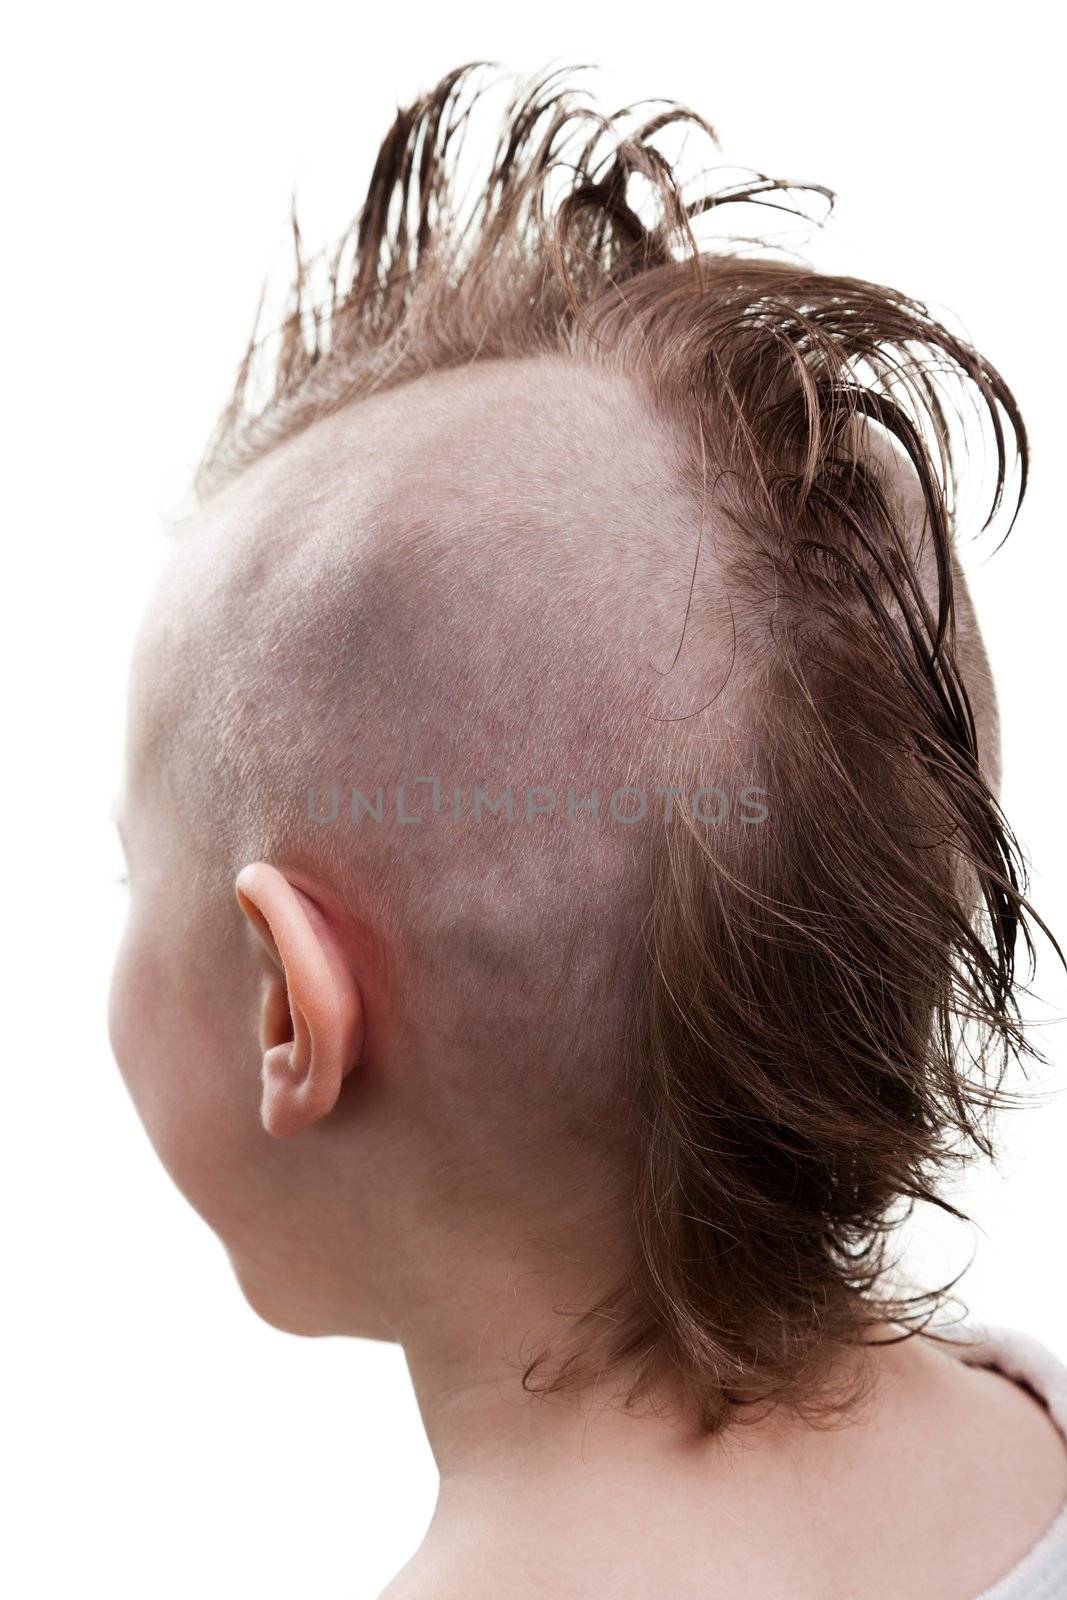 Punk hair child boy by ia_64